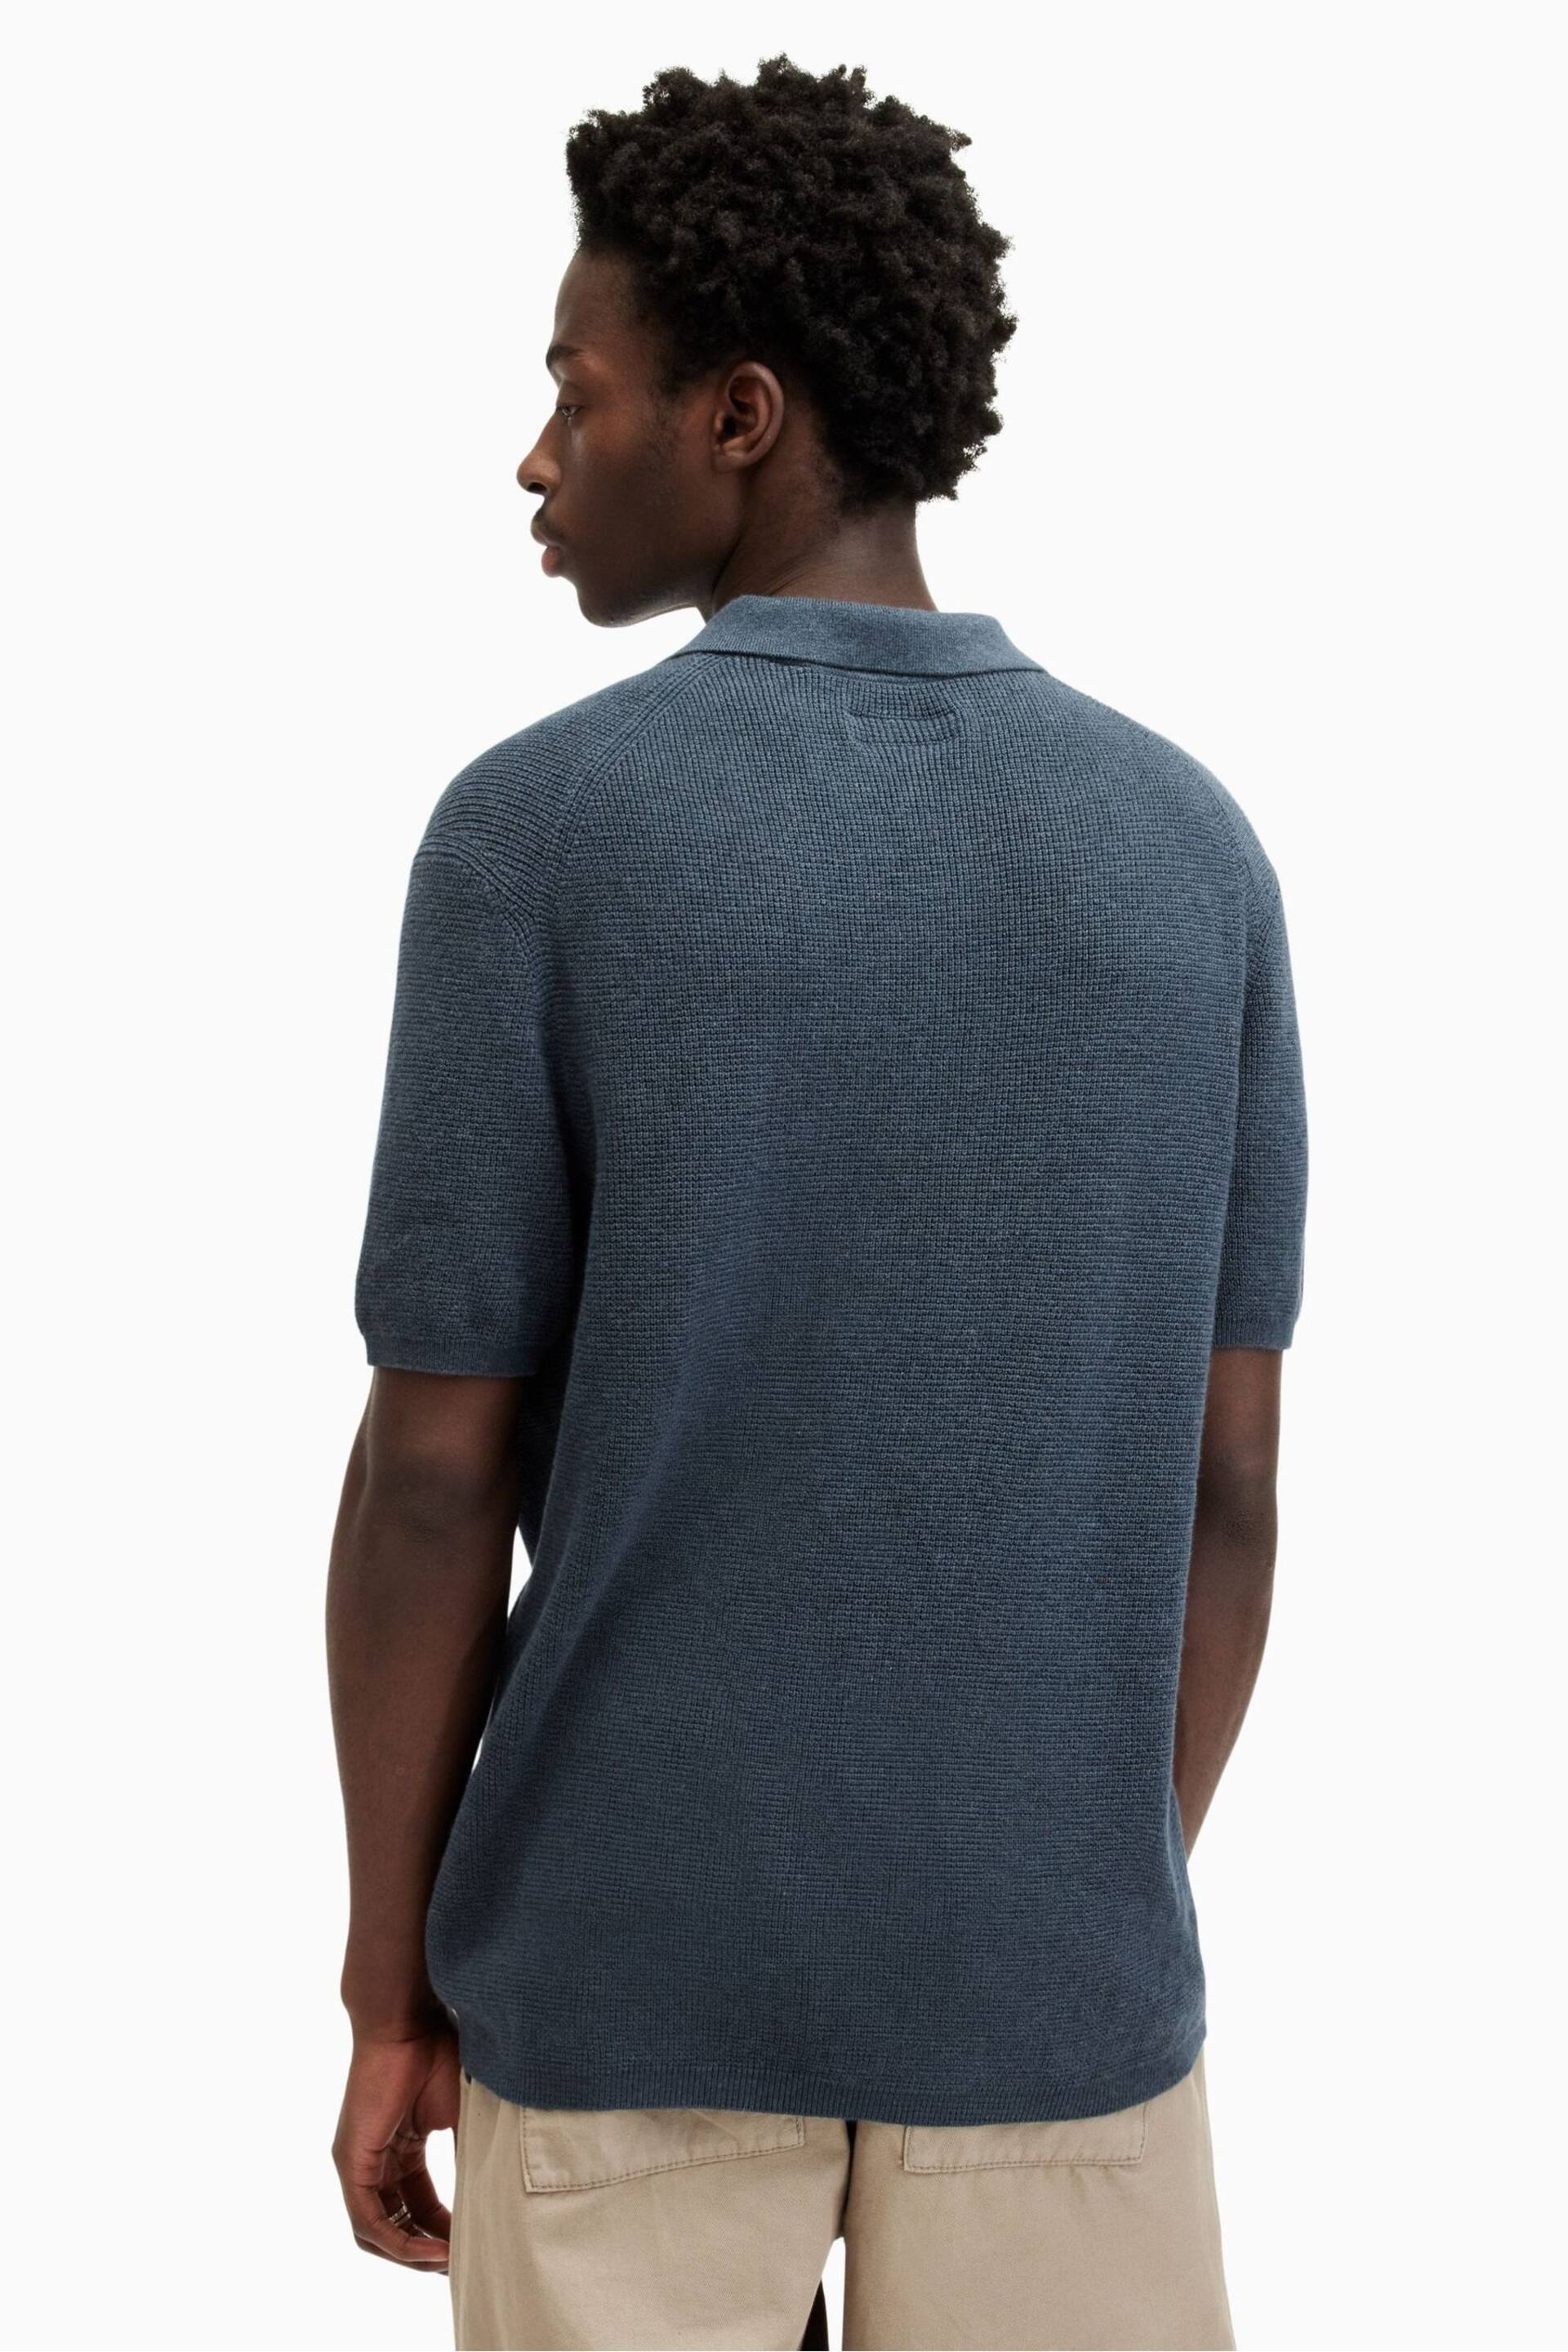 AllSaints Blue Aspen Short Sleeve Polo Shirt - Image 5 of 6